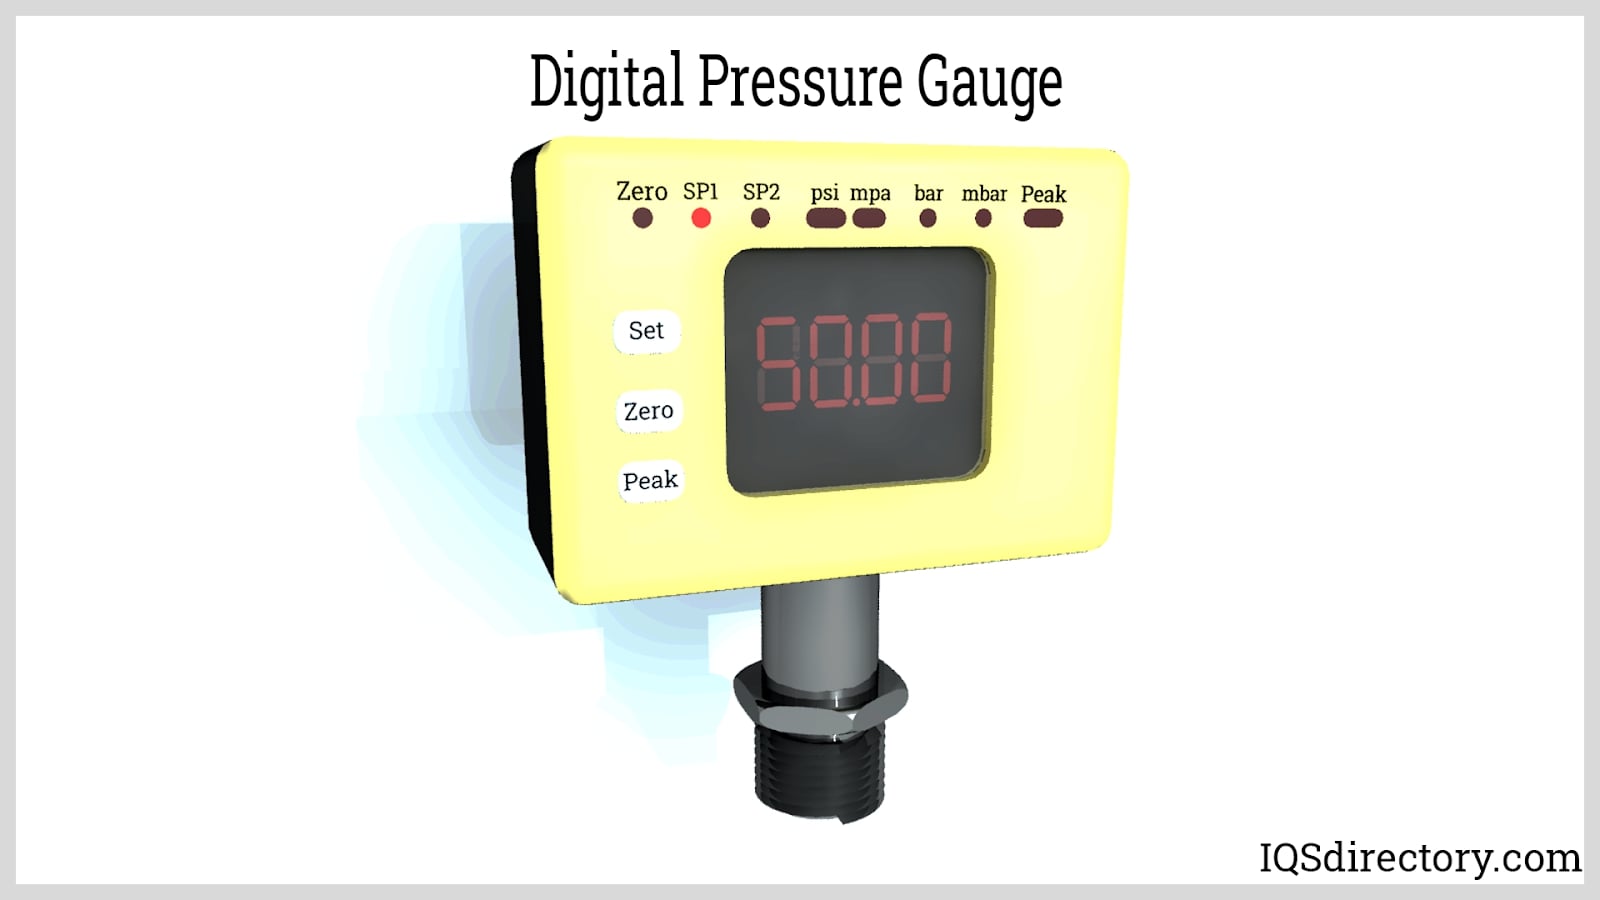 https://www.iqsdirectory.com/articles/pressure-gauge/digital-pressure-gauge.jpg